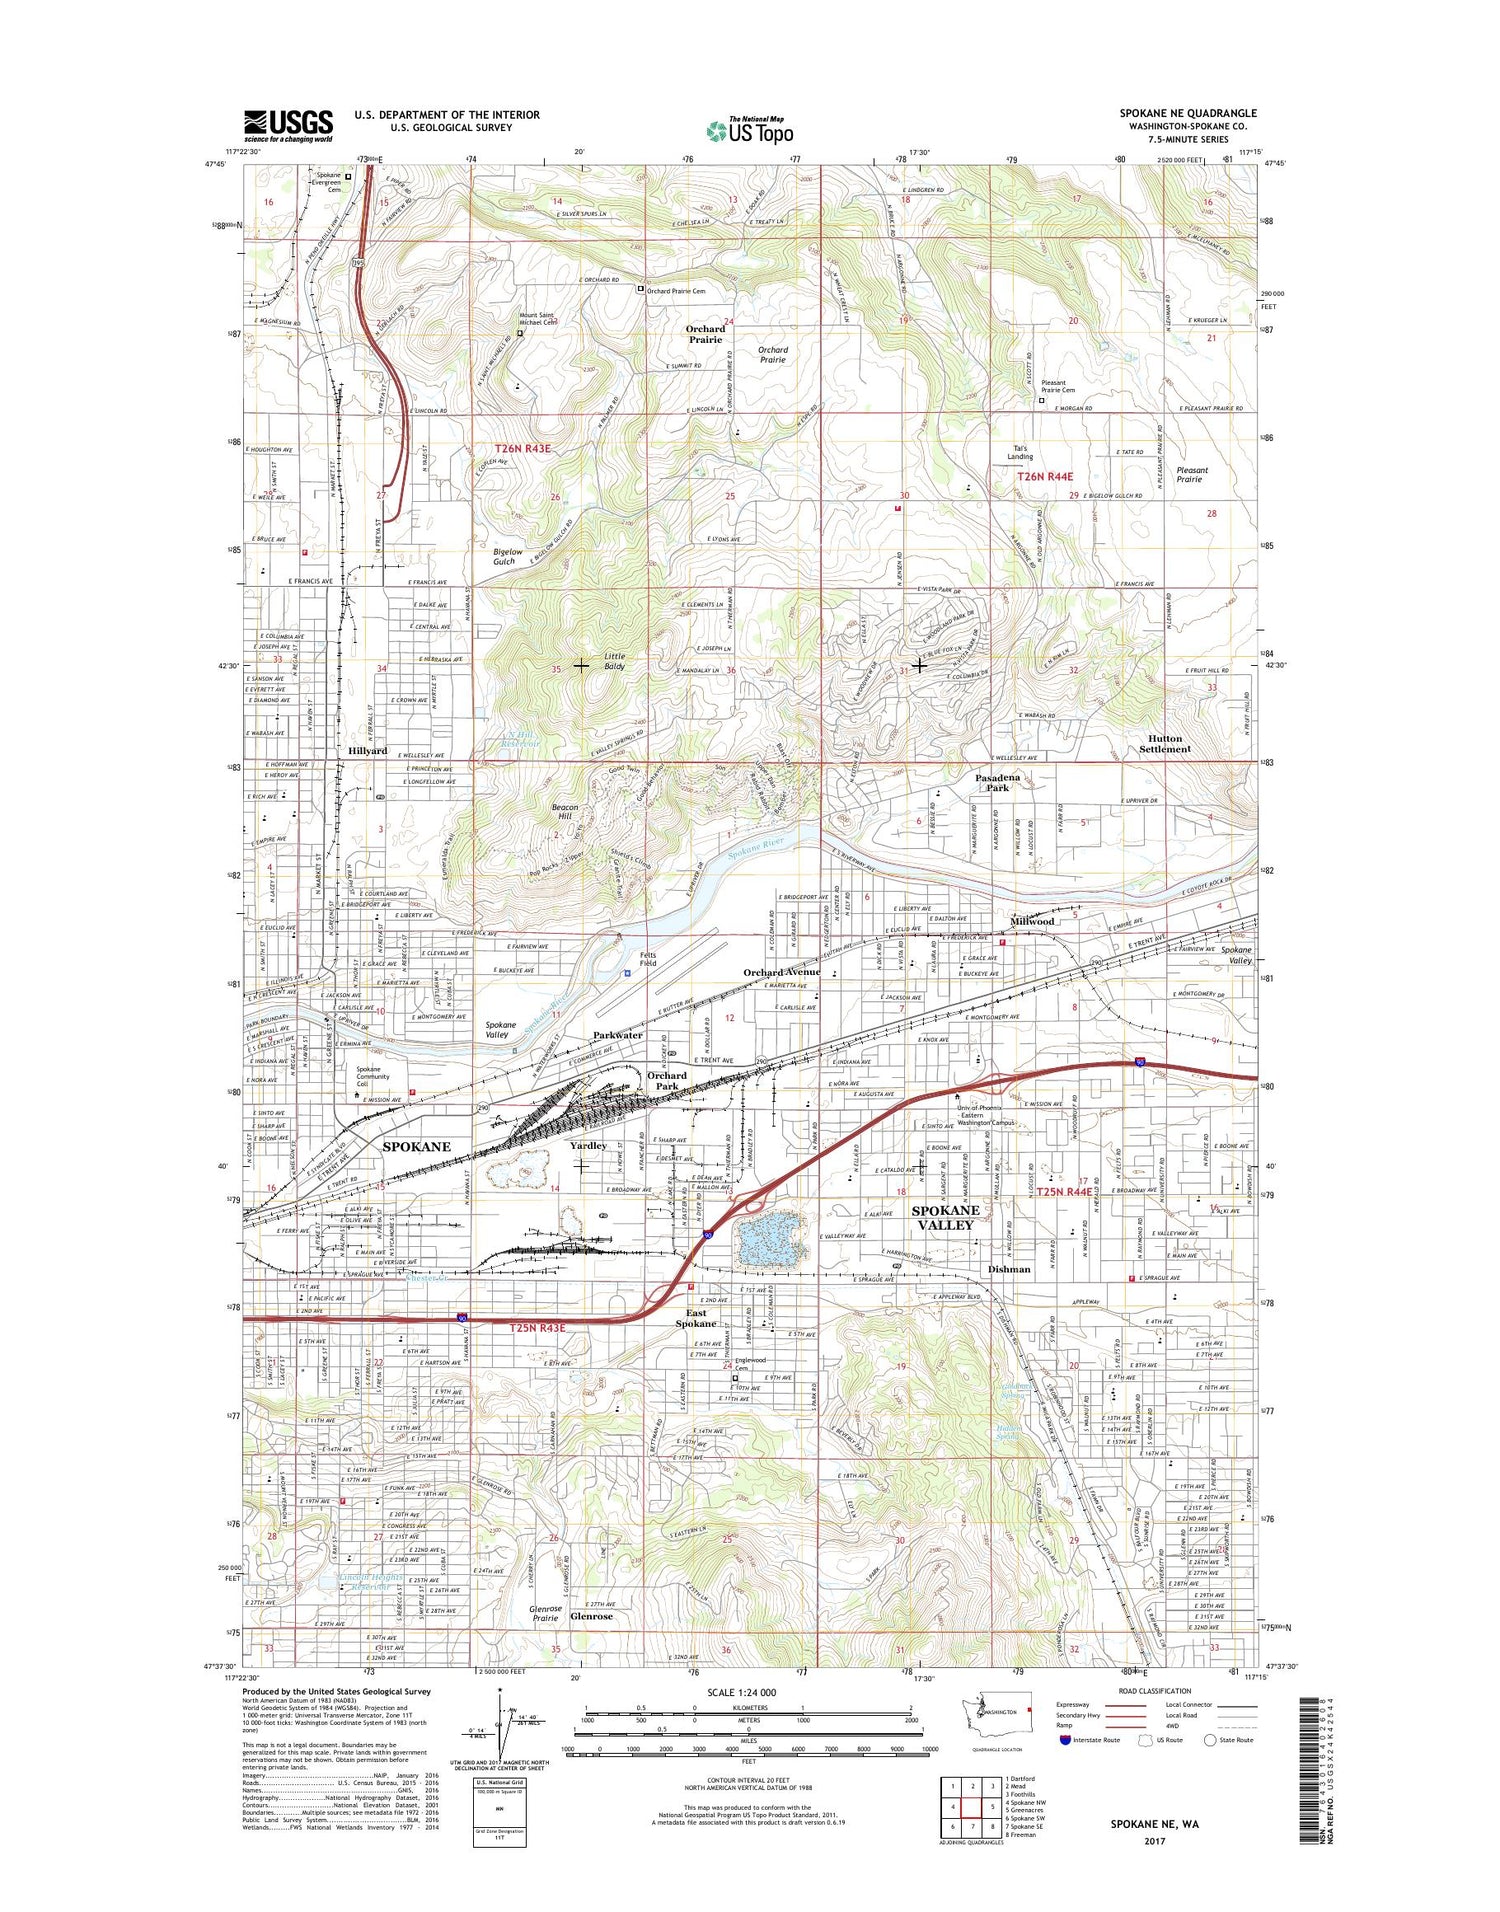 Spokane NE Washington US Topo Map Image